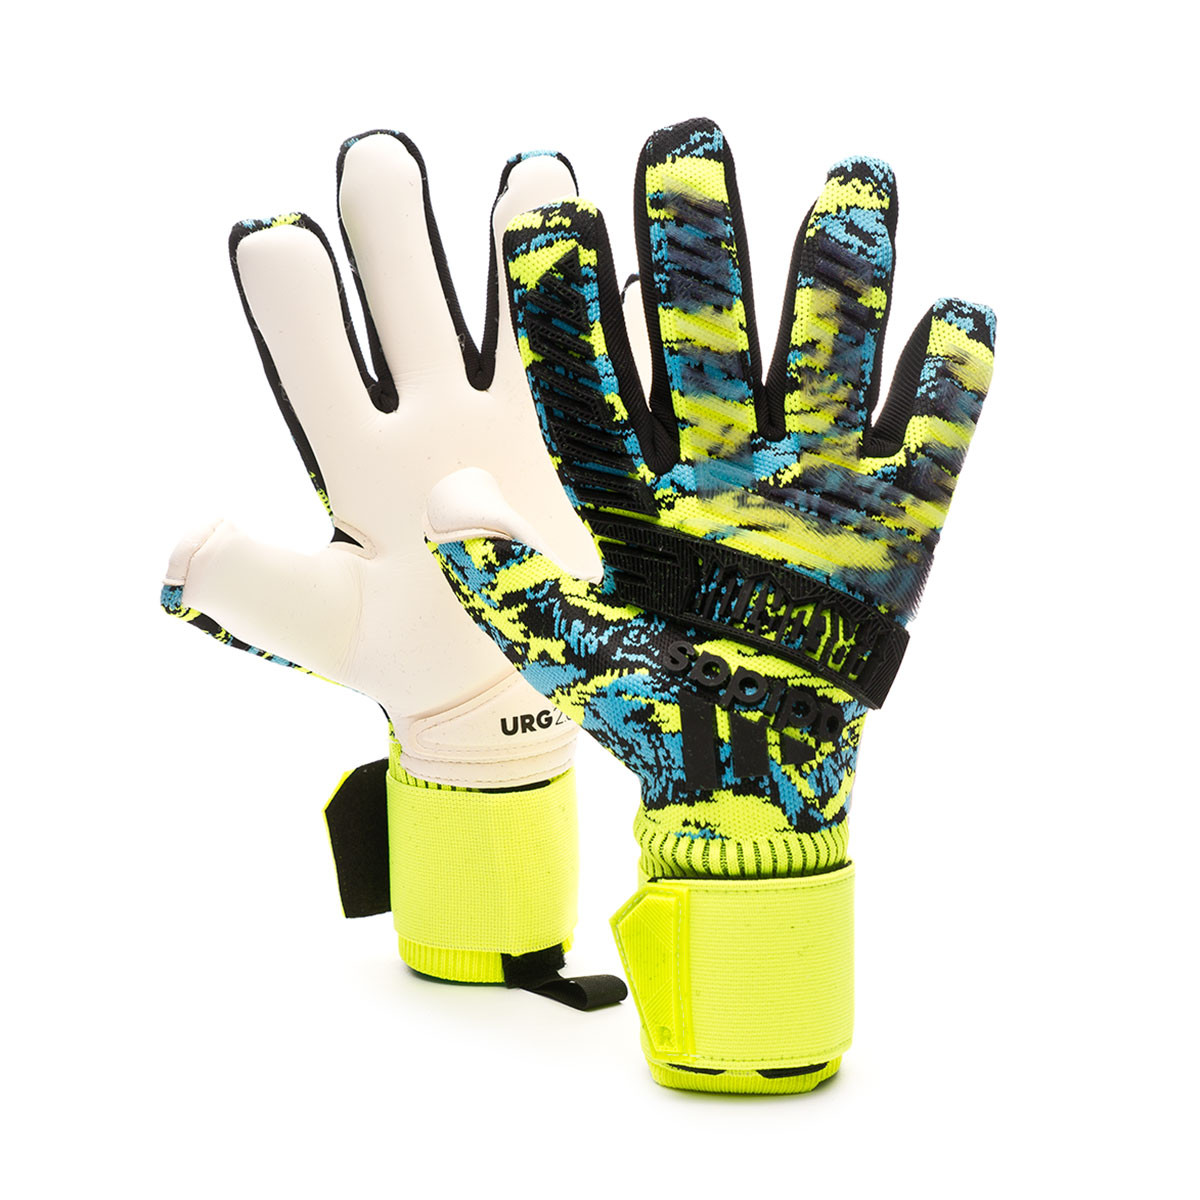 adidas neuer gloves